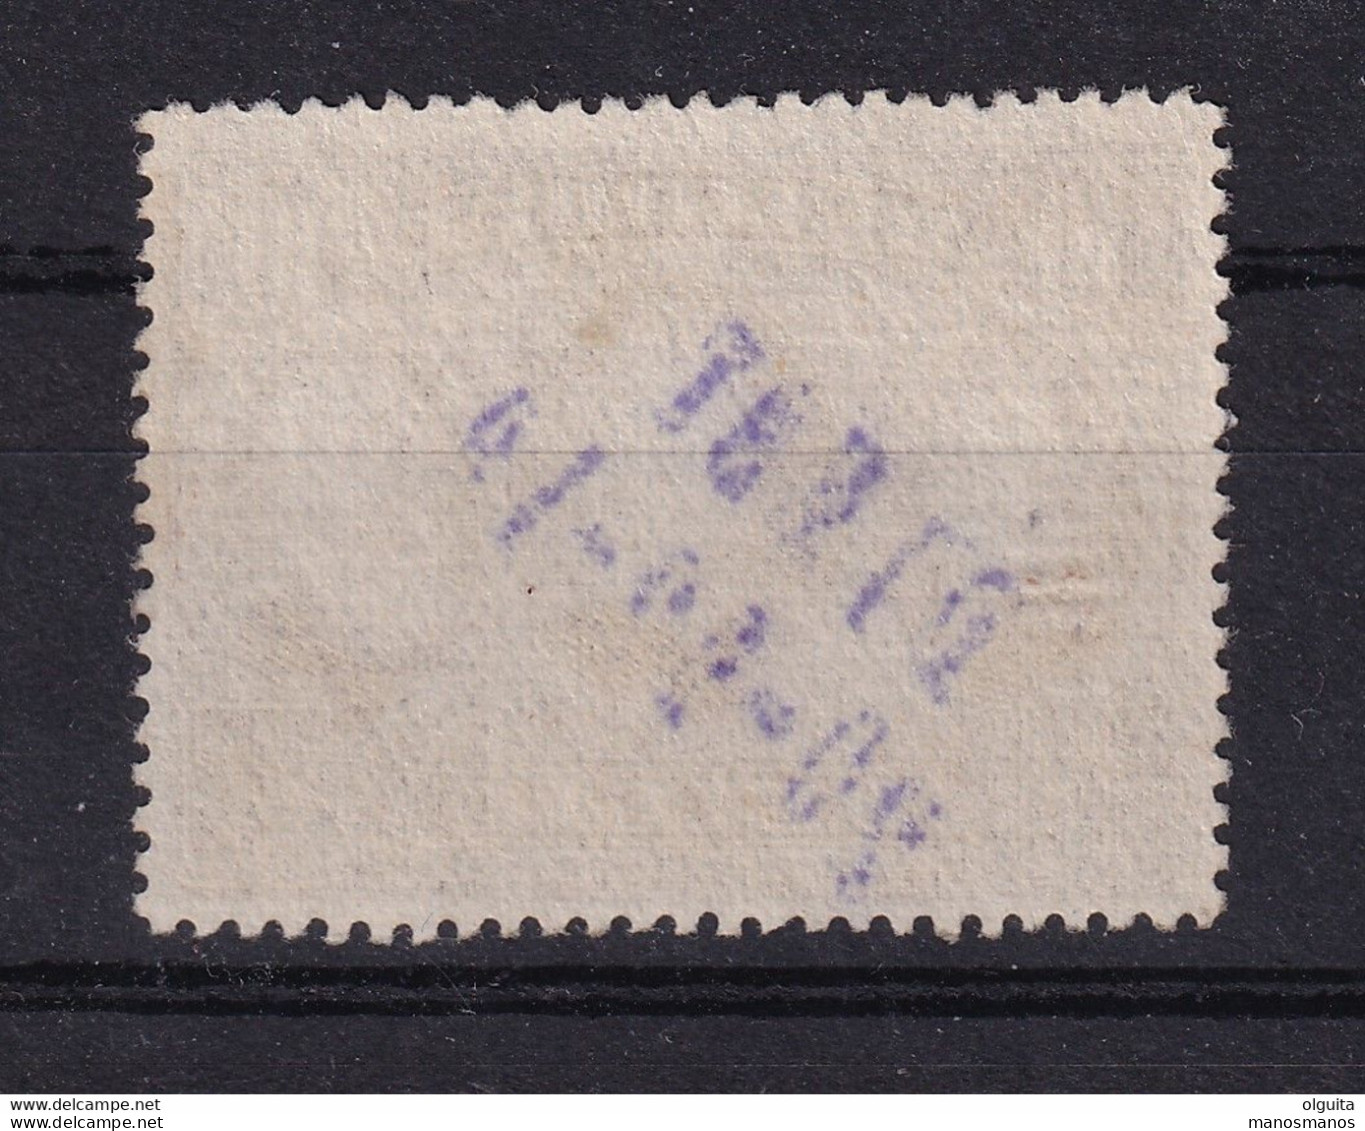 DDCC 930 -- Timbre 149 Emission 1915 10 F Les 3 Rois - Cachet De Fortune Au Composteur DIEST 20-12-19 En Violet - Foruna (1919)